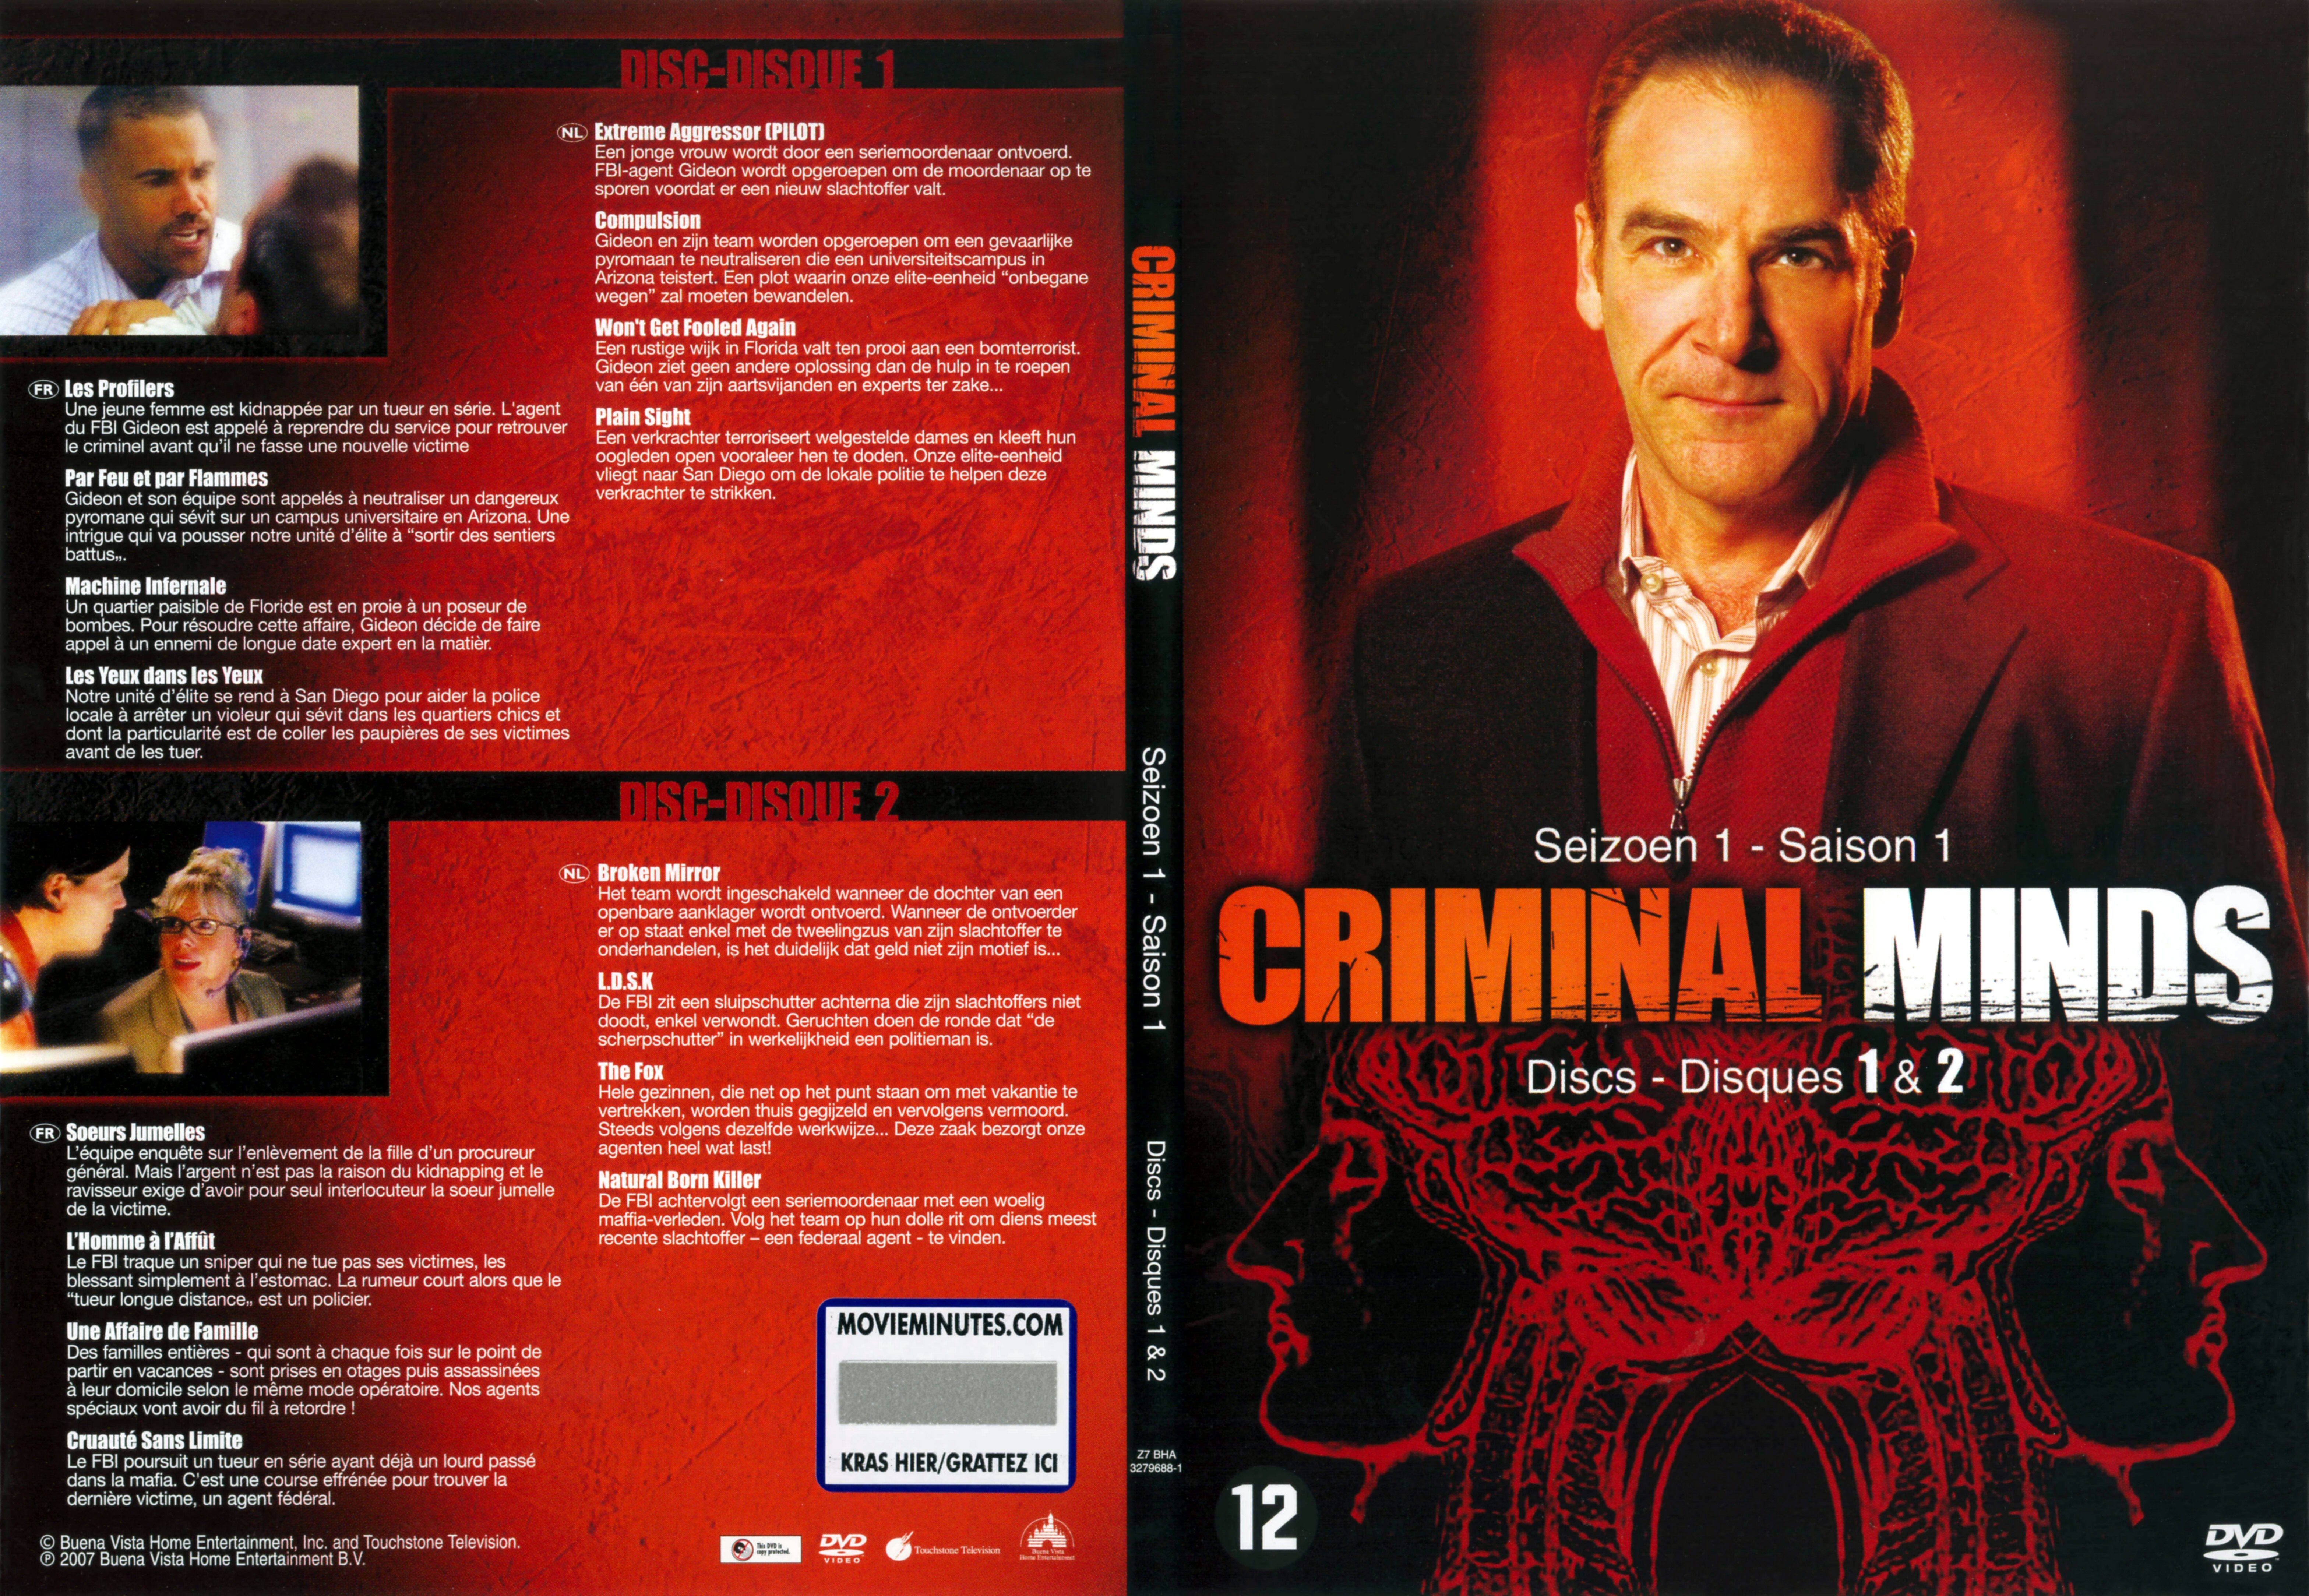 Jaquette DVD Criminal minds saison 1 DVD 1